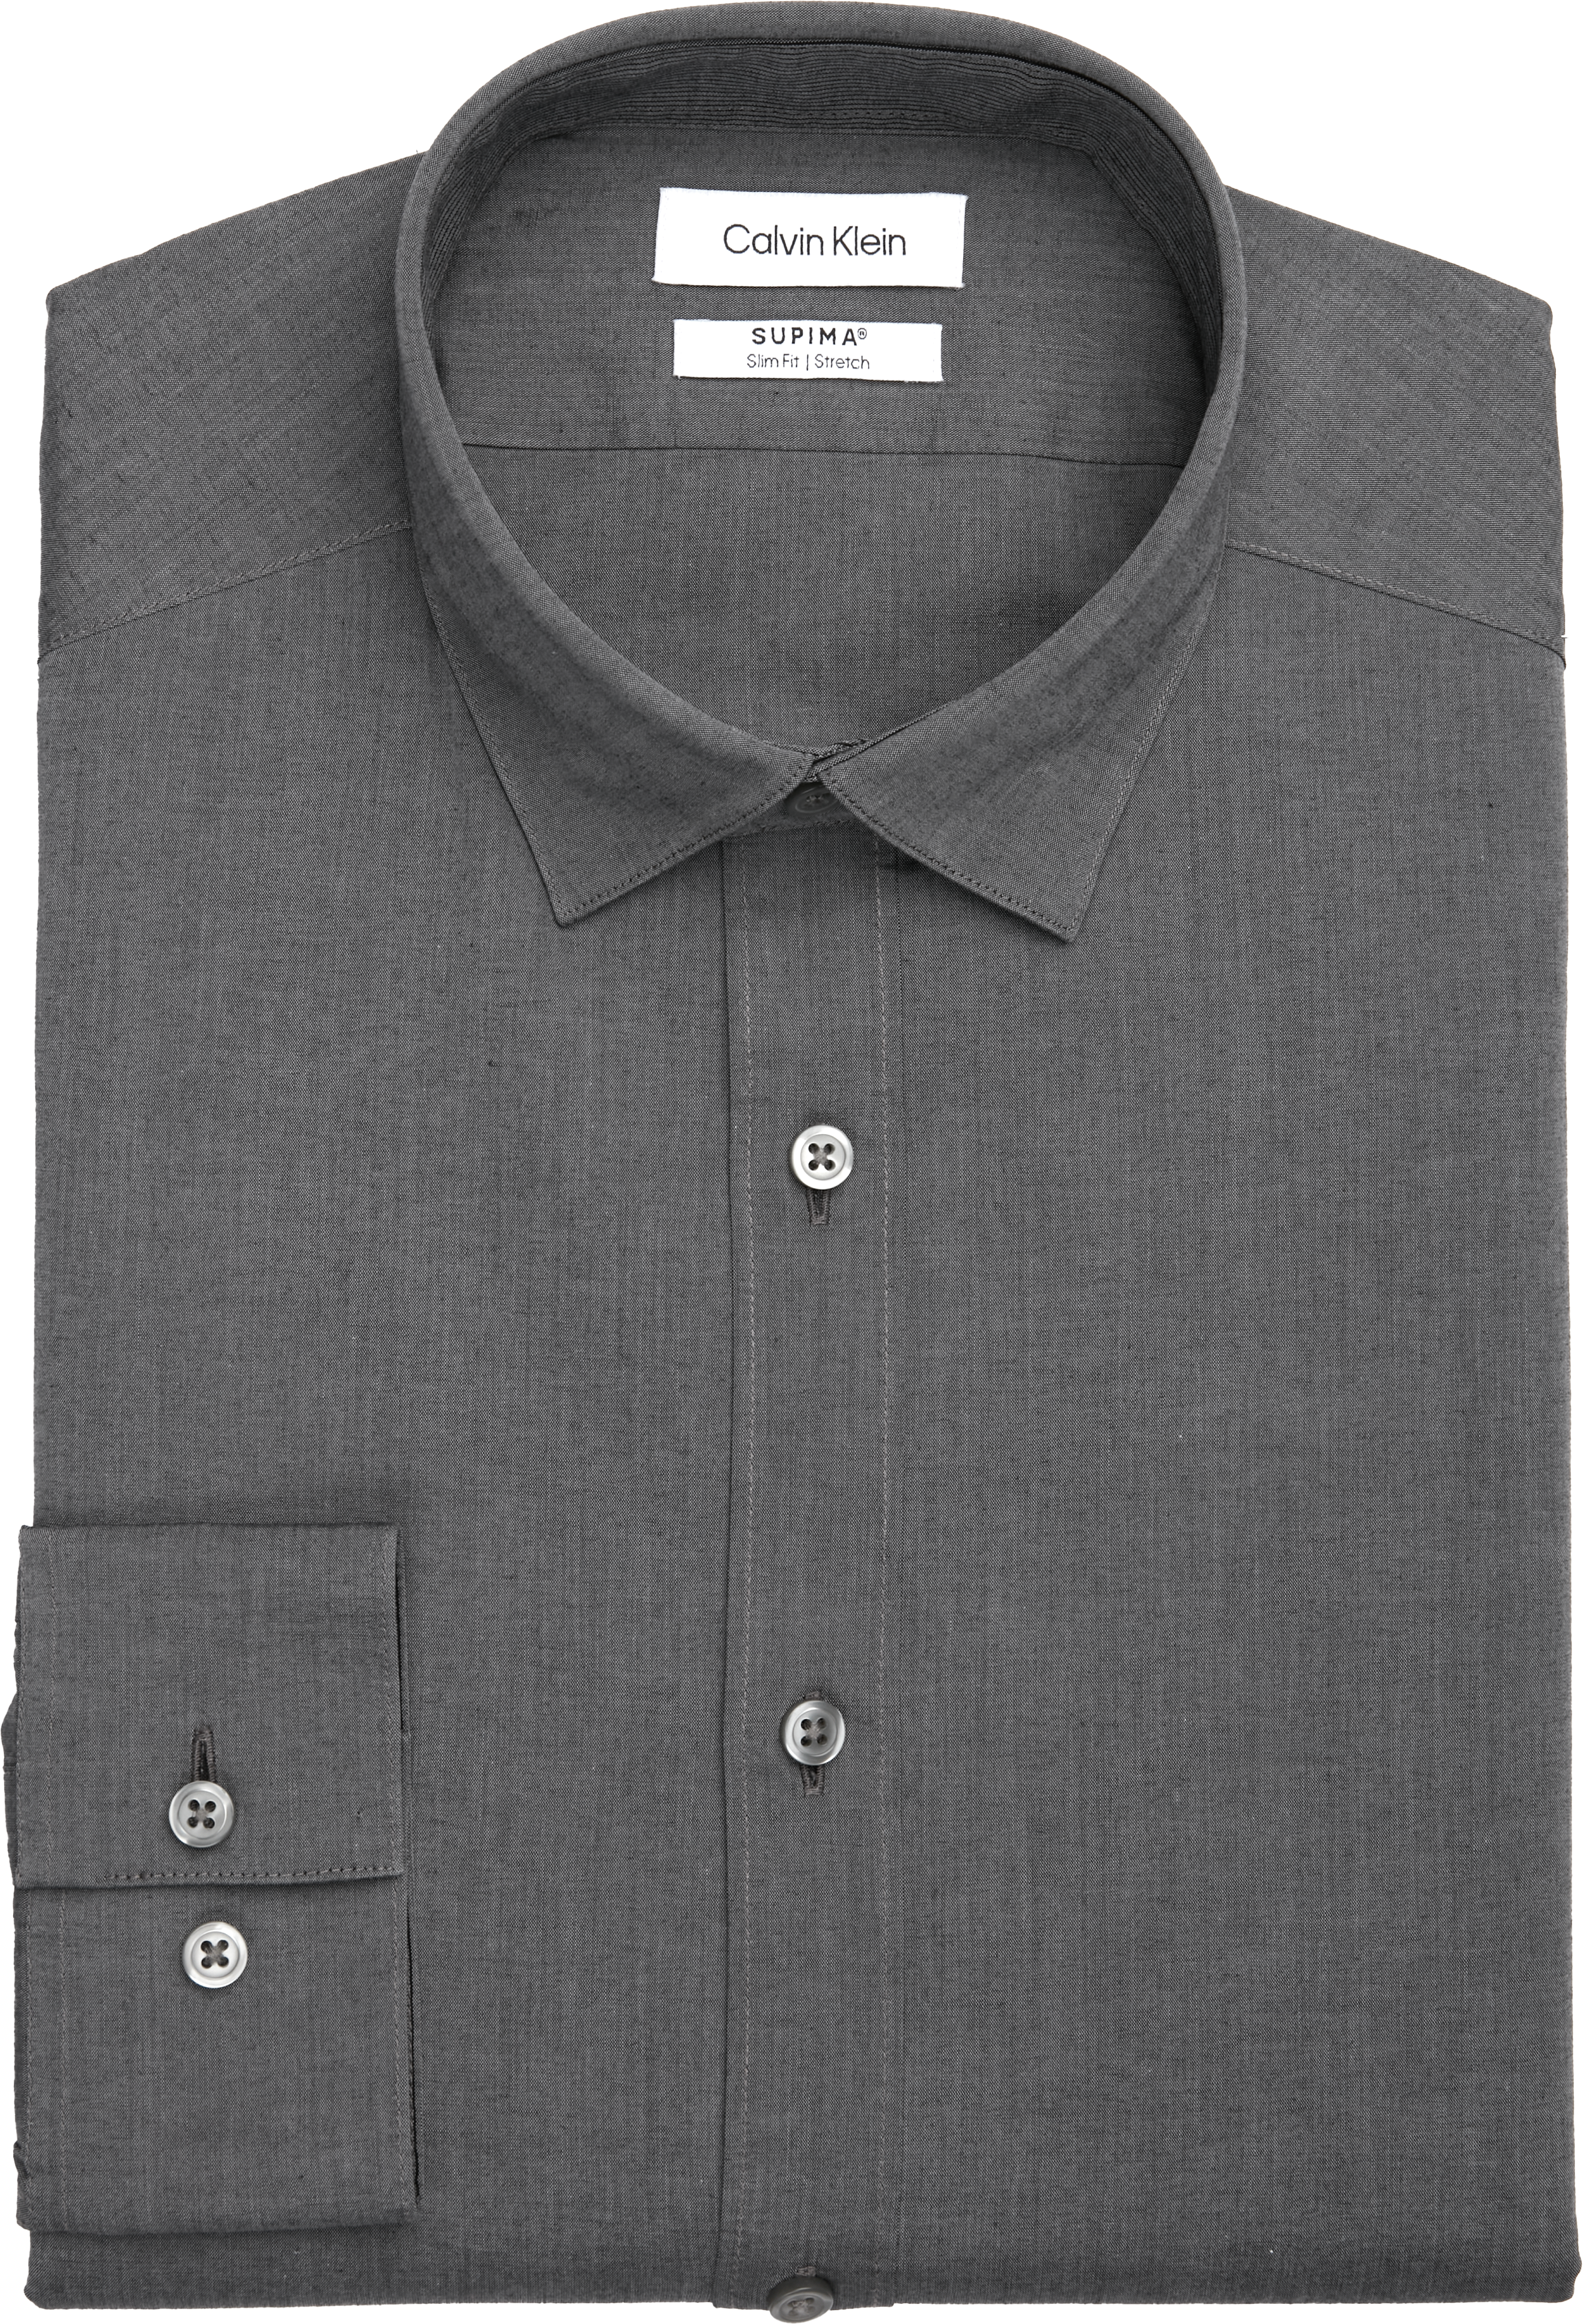 Calvin Klein Slim Fit Hidden Button-Down Collar Dress Shirt, Charcoal -  Men's Featured | Men's Wearhouse